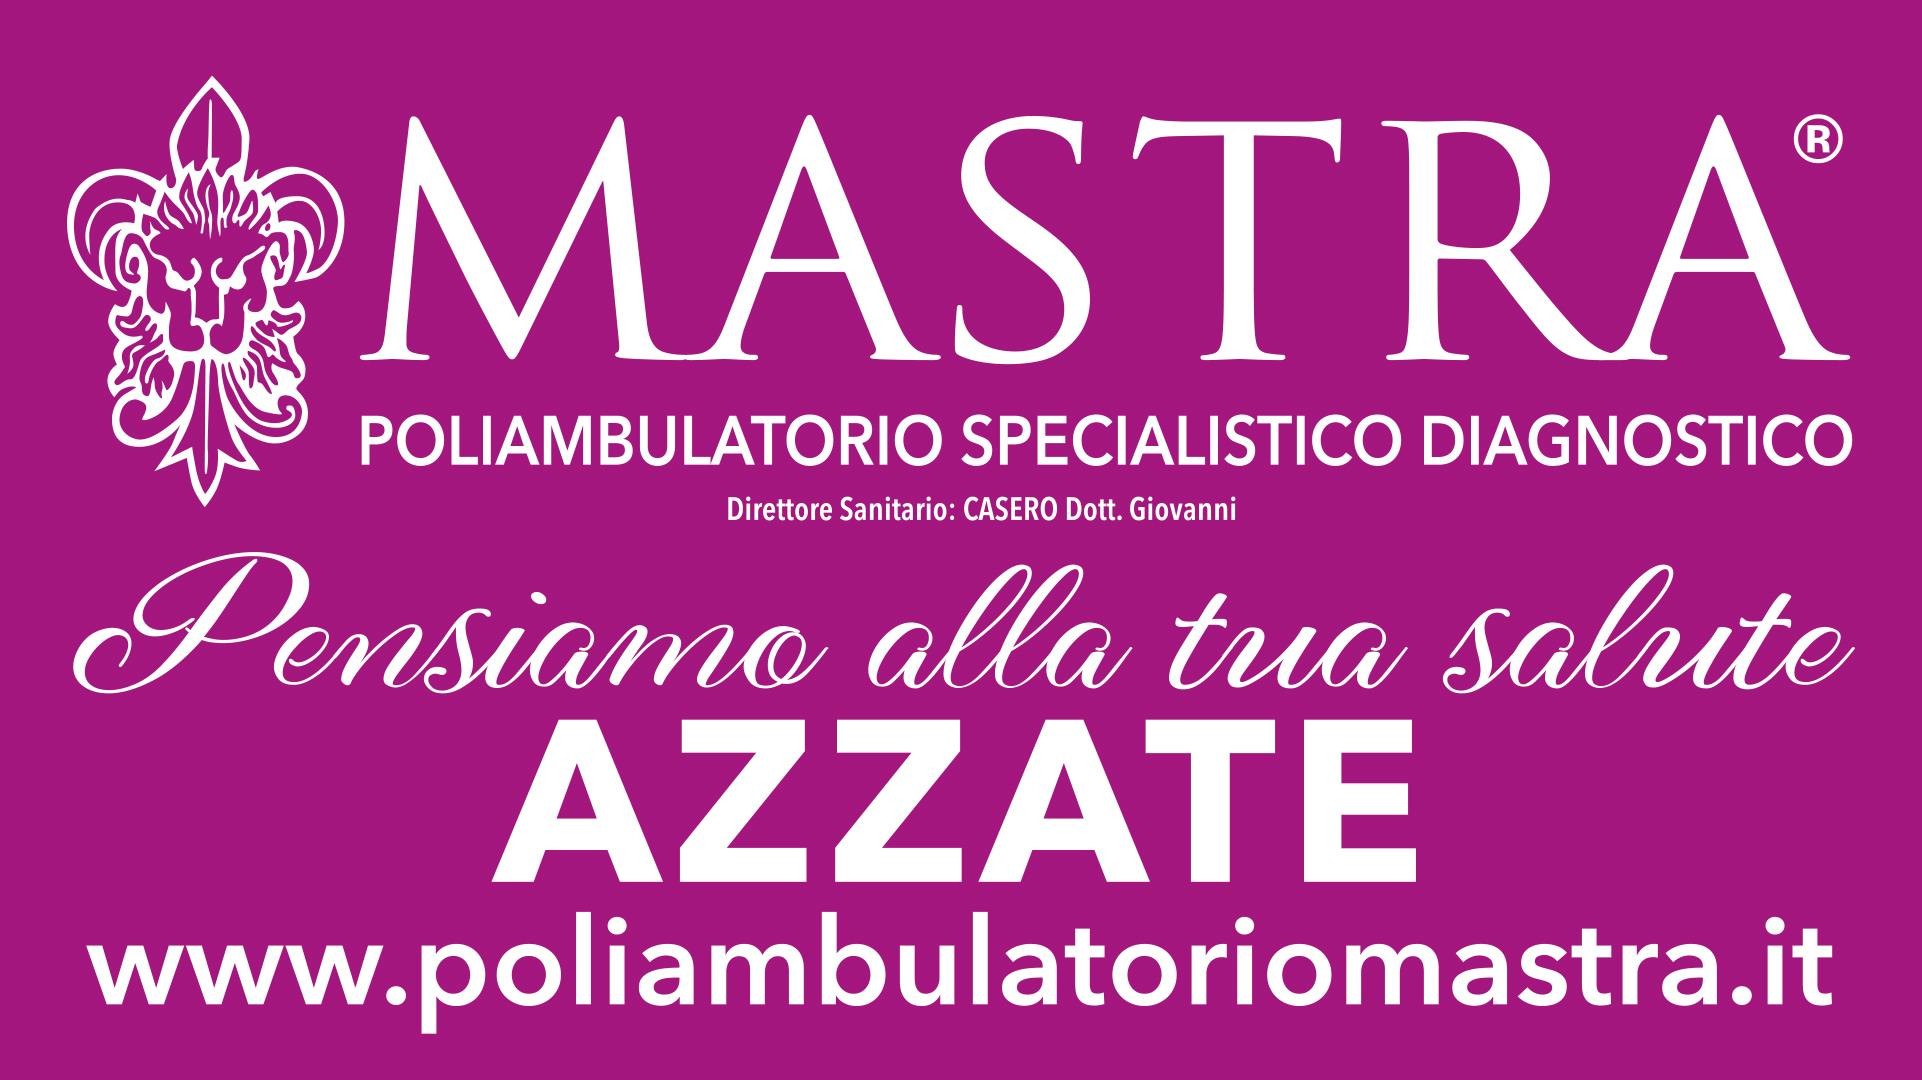 Immagine sponsor Poliambulatorio Mastra